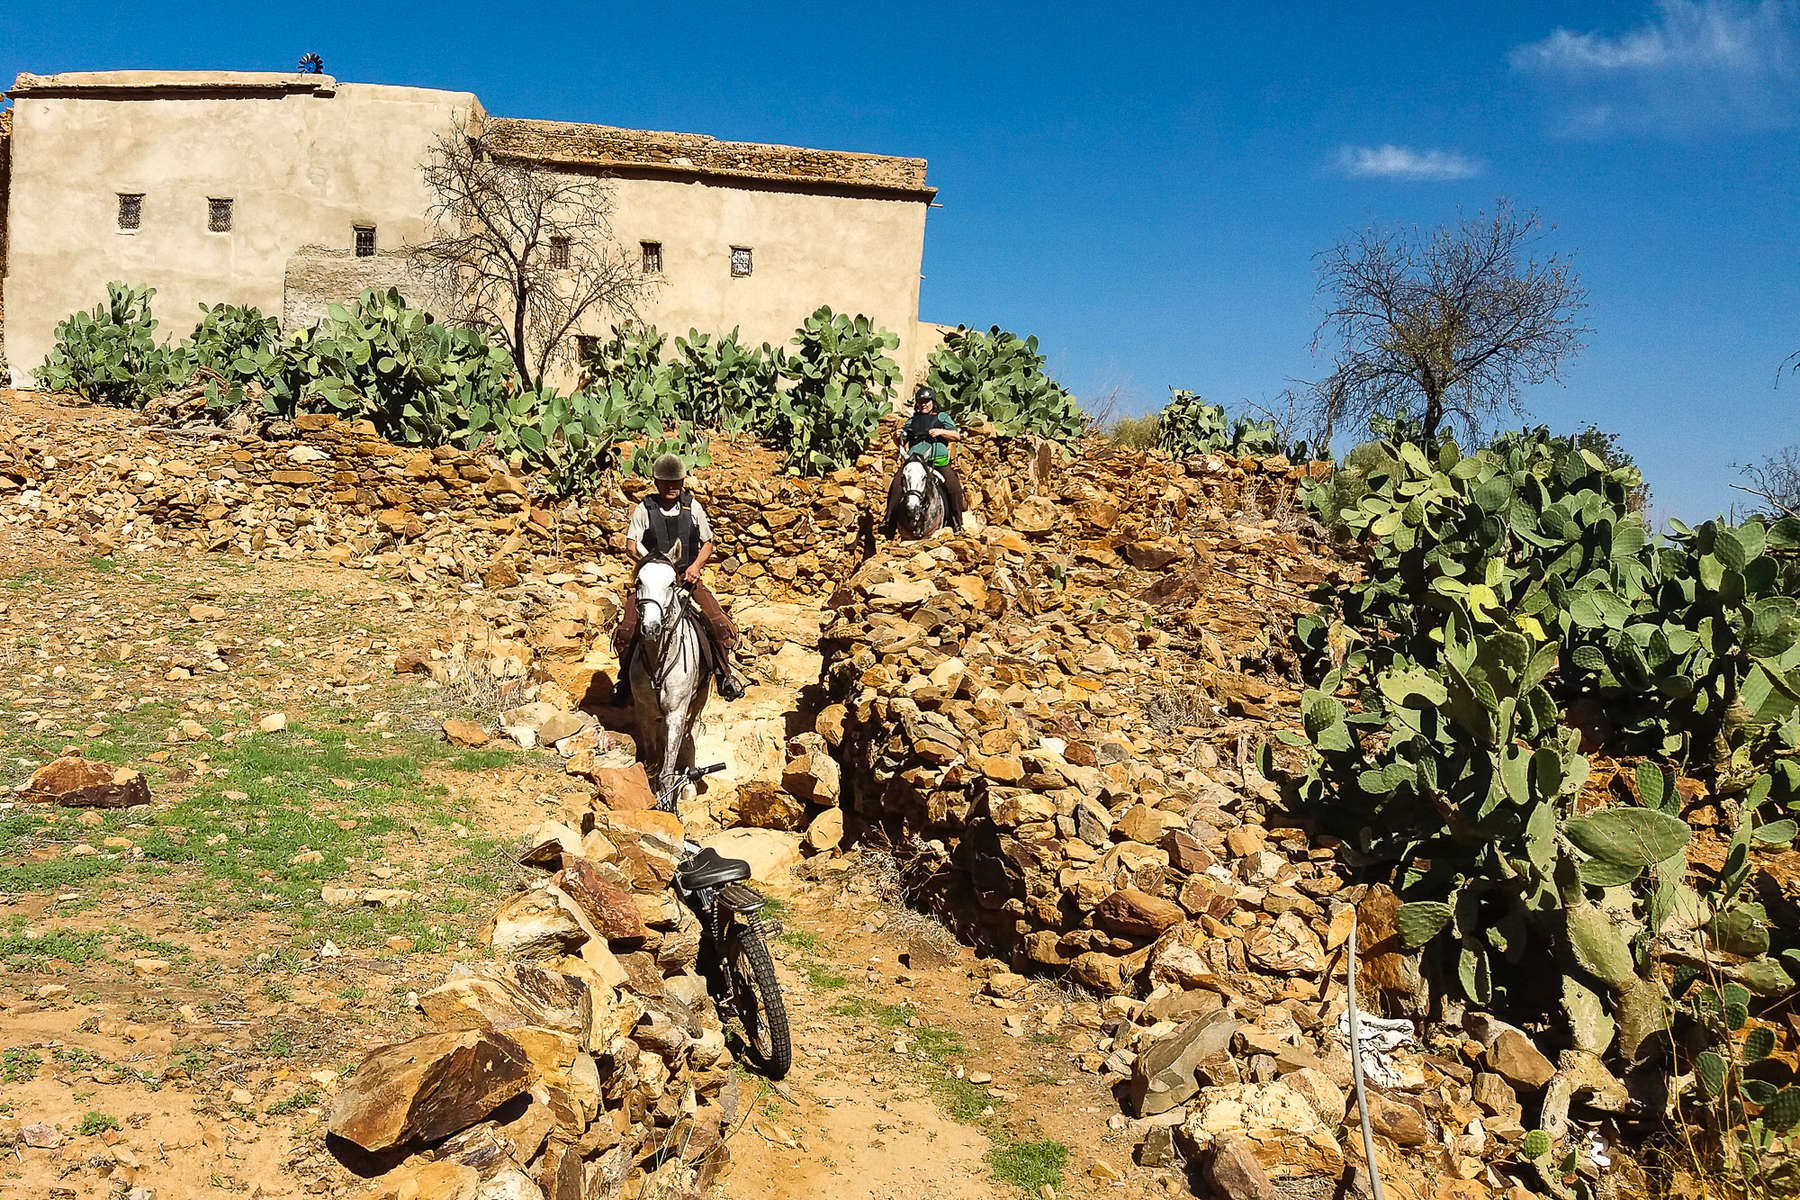 Sentier d'arganiers à cheval au Maroc